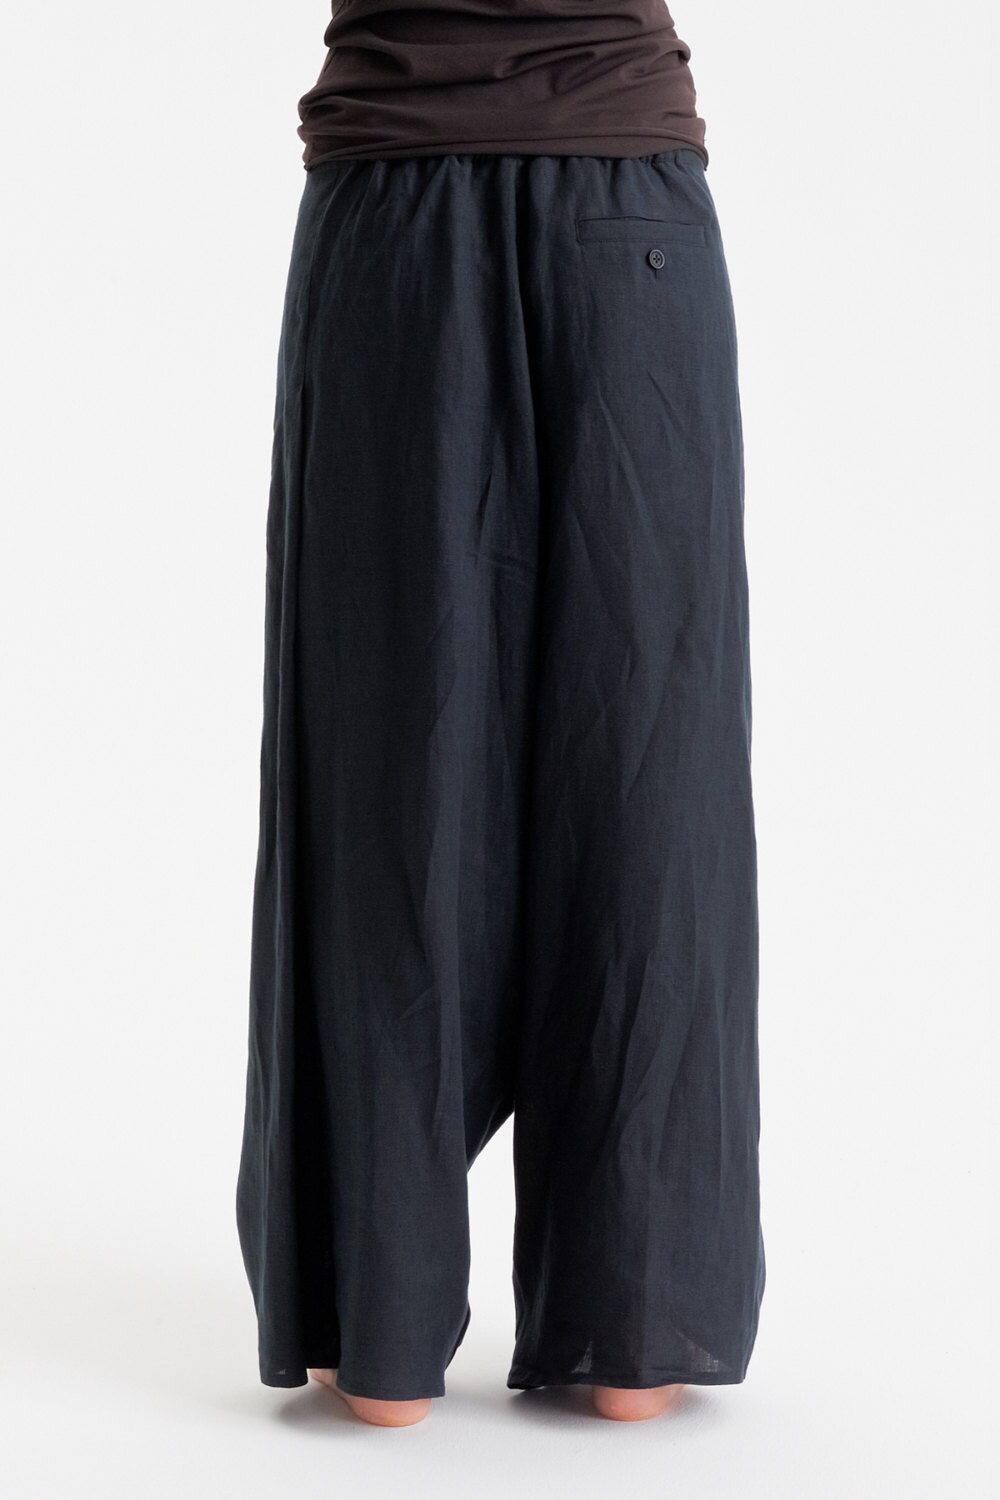 Black Linen Pants / Extravagant Drop Crotch Black Pants / - Etsy Denmark